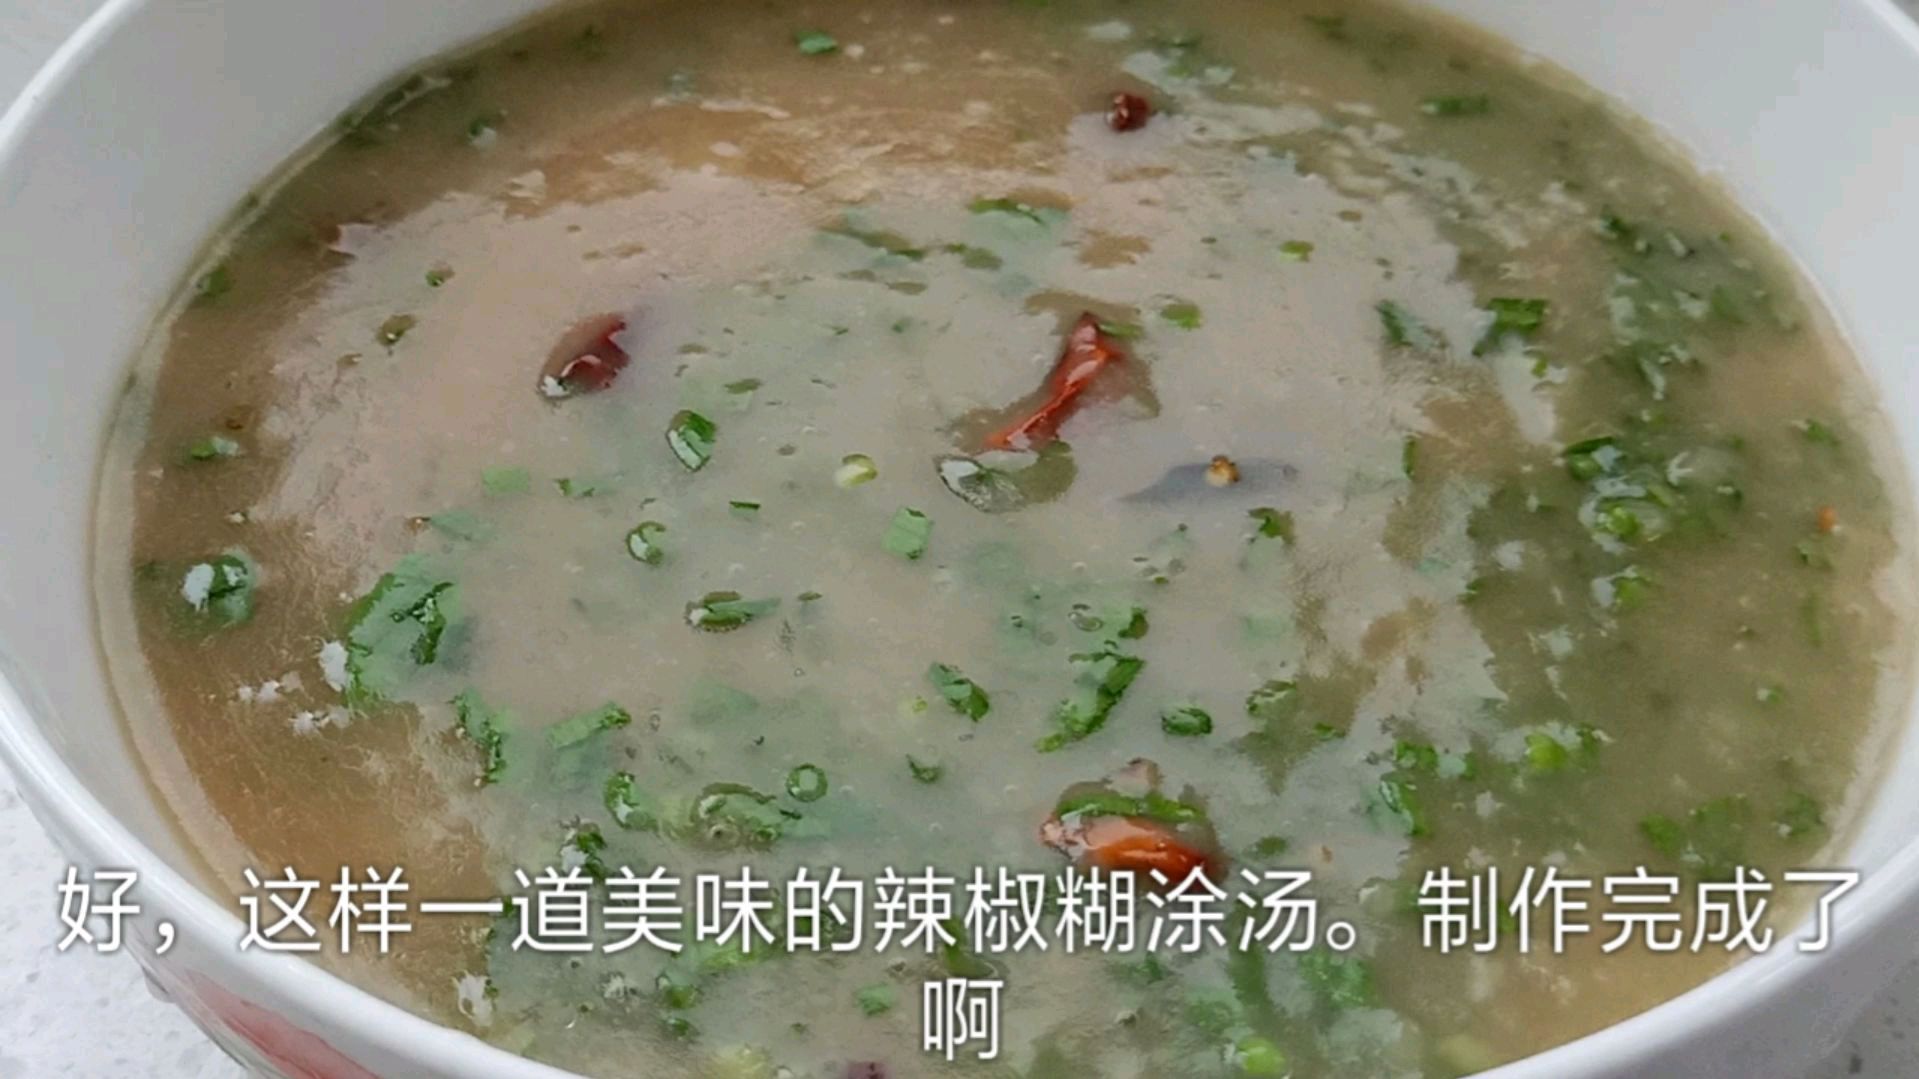 辣椒糊涂,在邯郸地区是很久的美食了,小时候经常吃,一碗不够吃